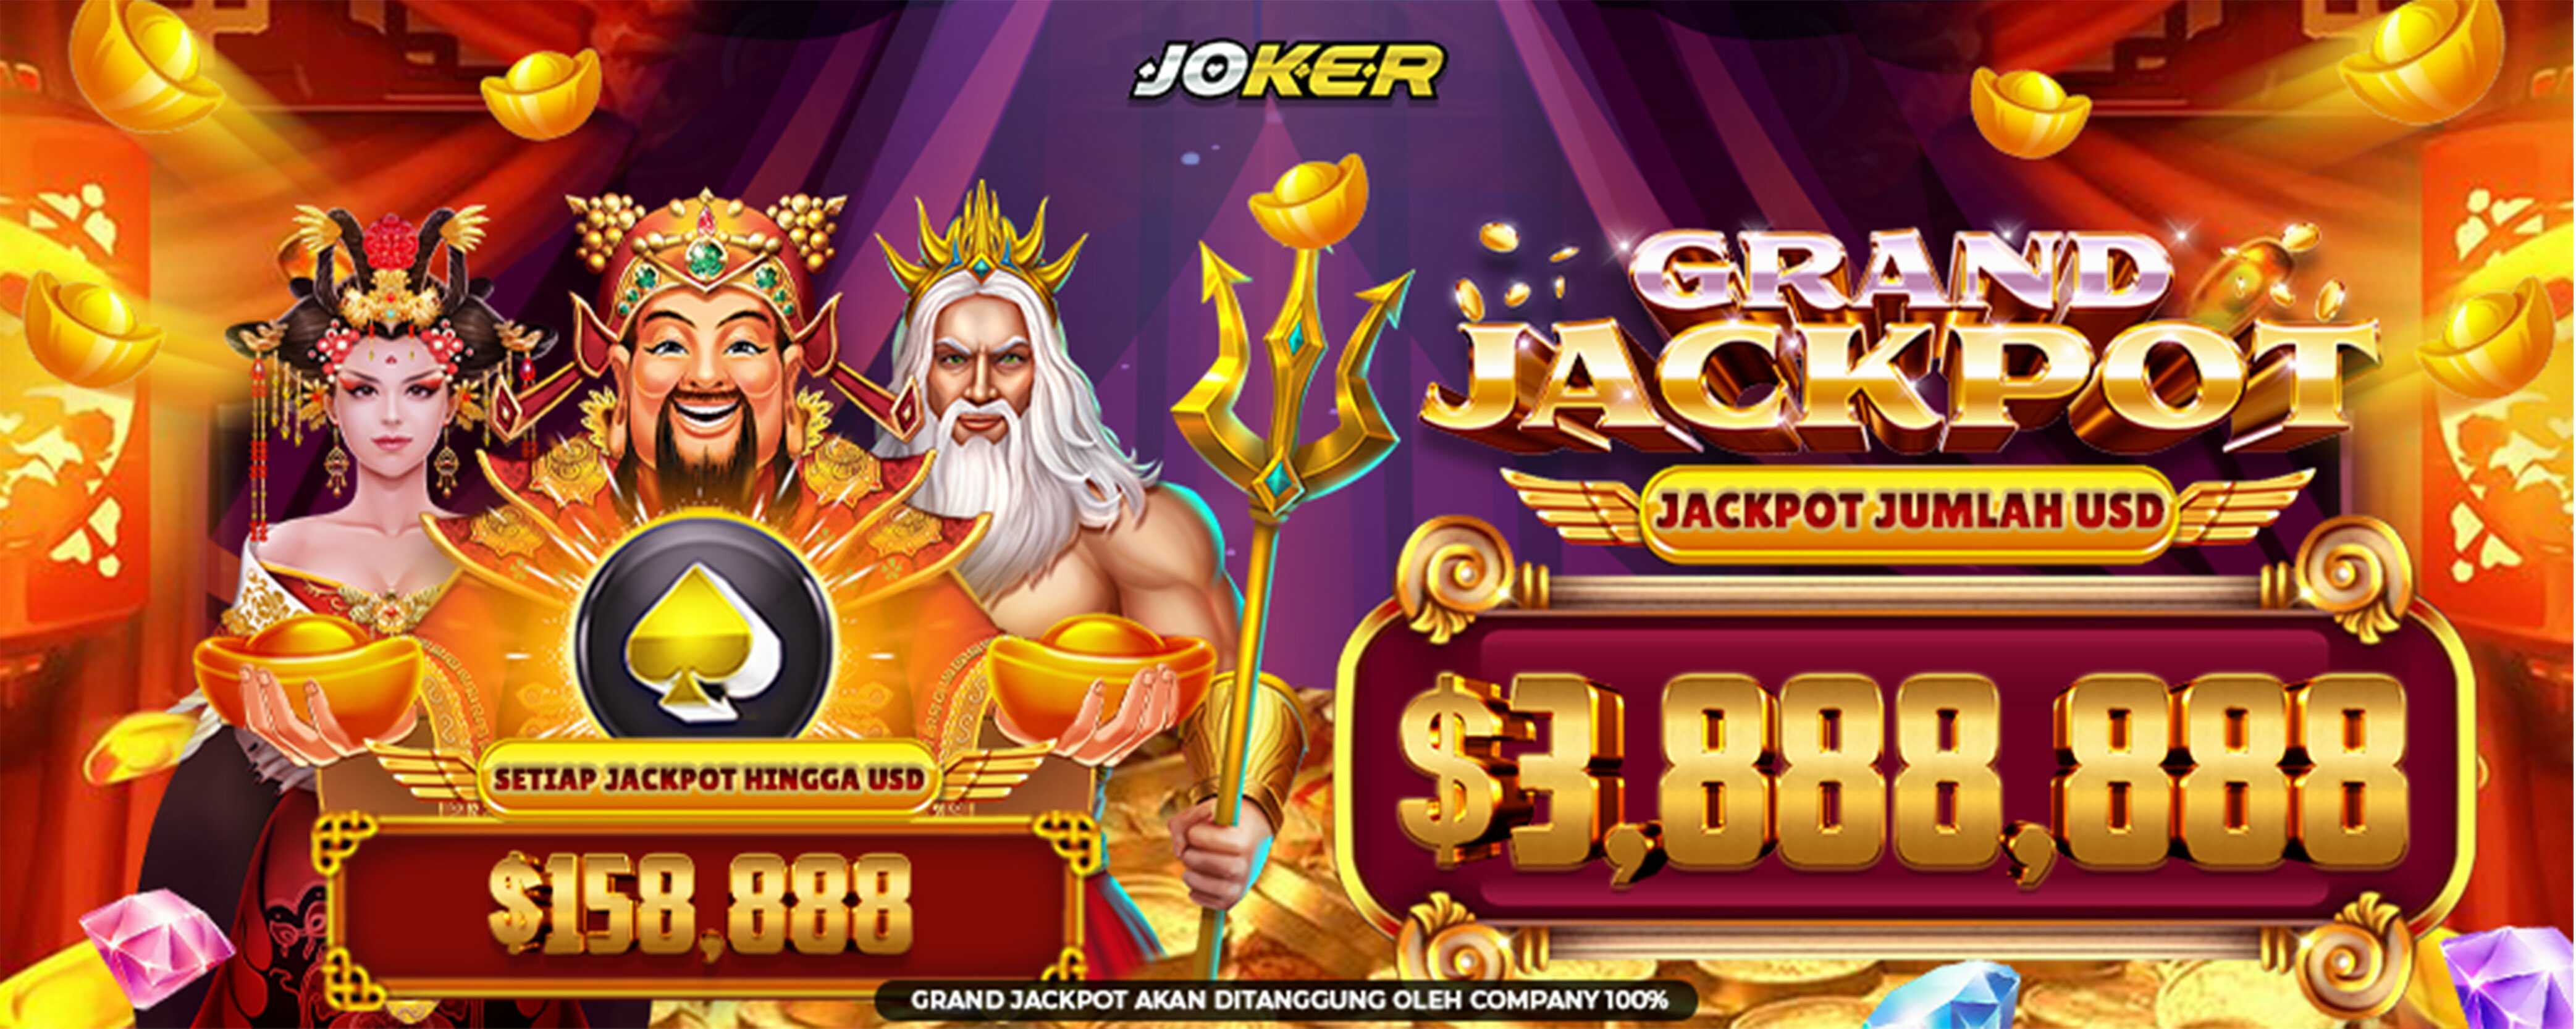 Joker Grand Jackpot